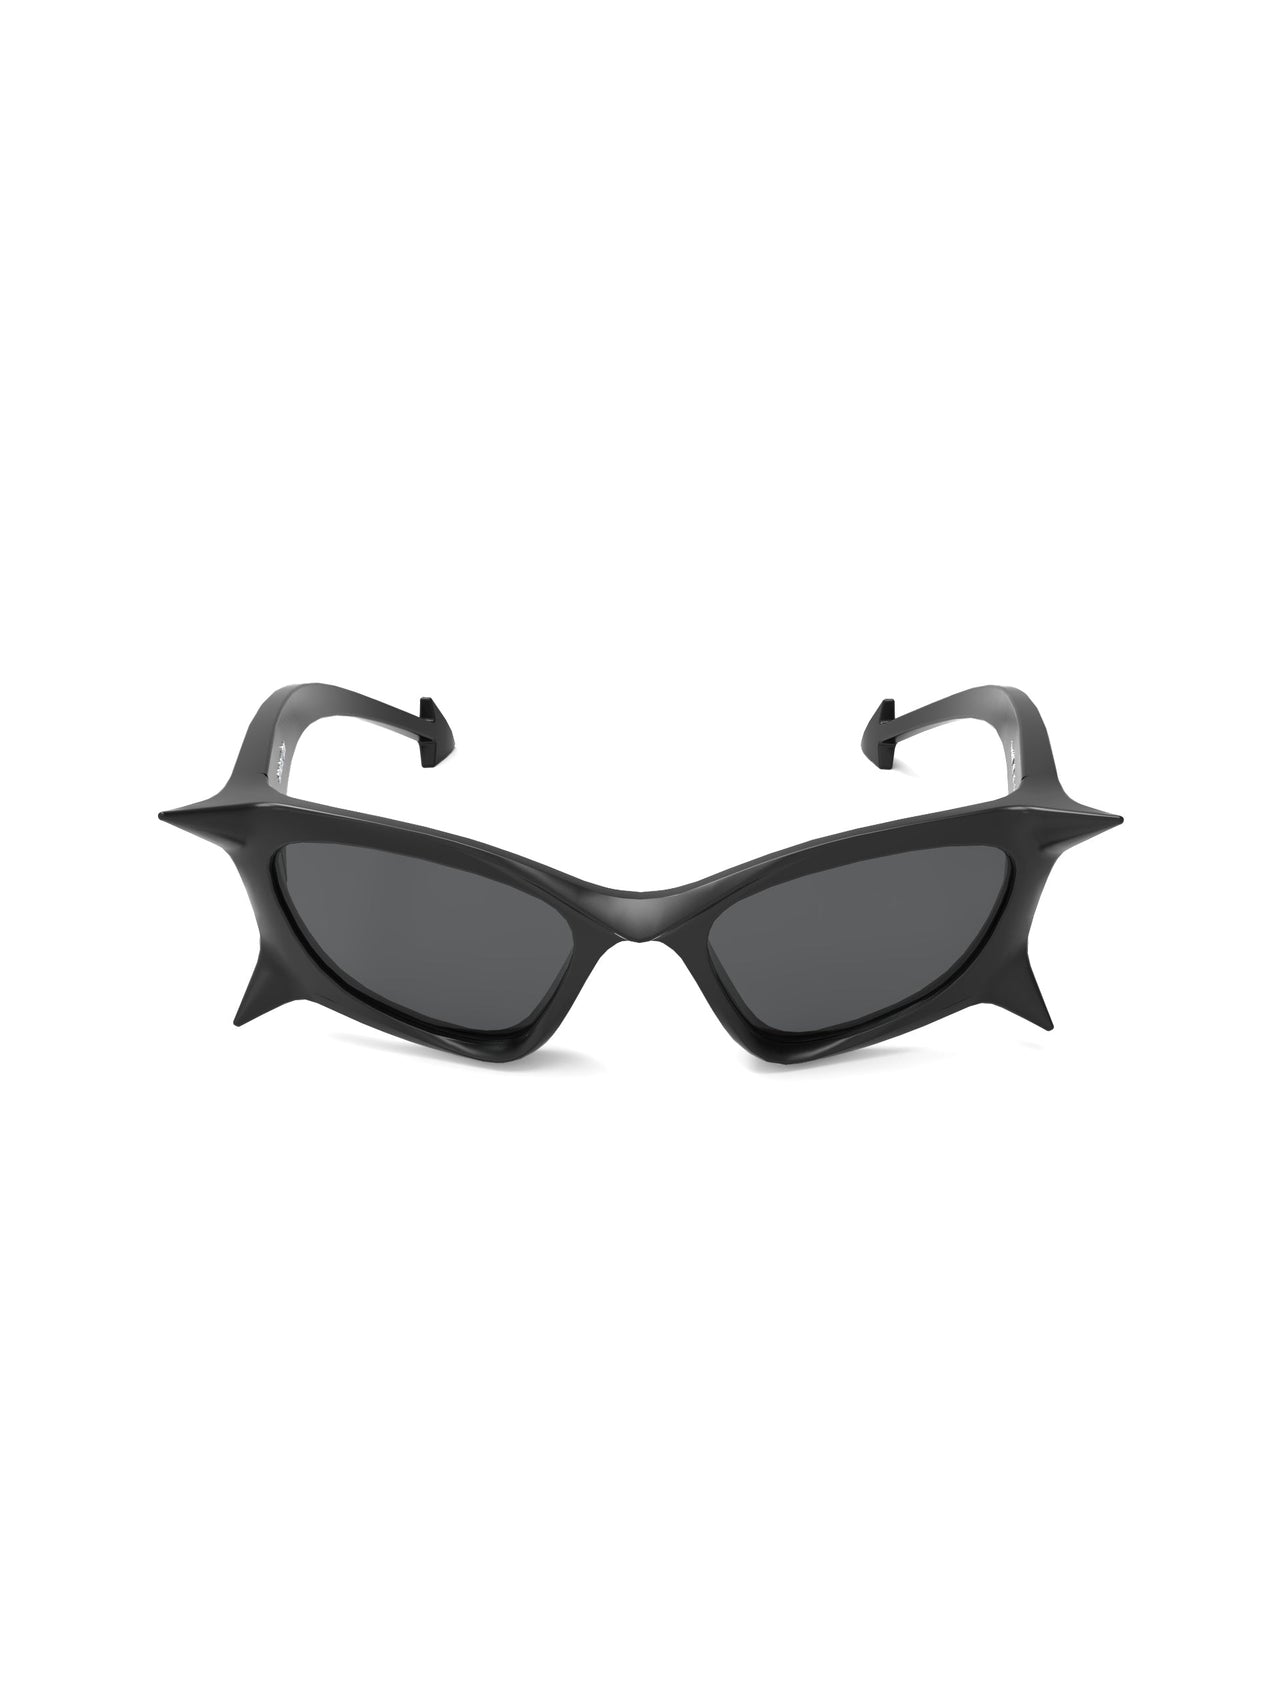 Devil Horns Sunglasses